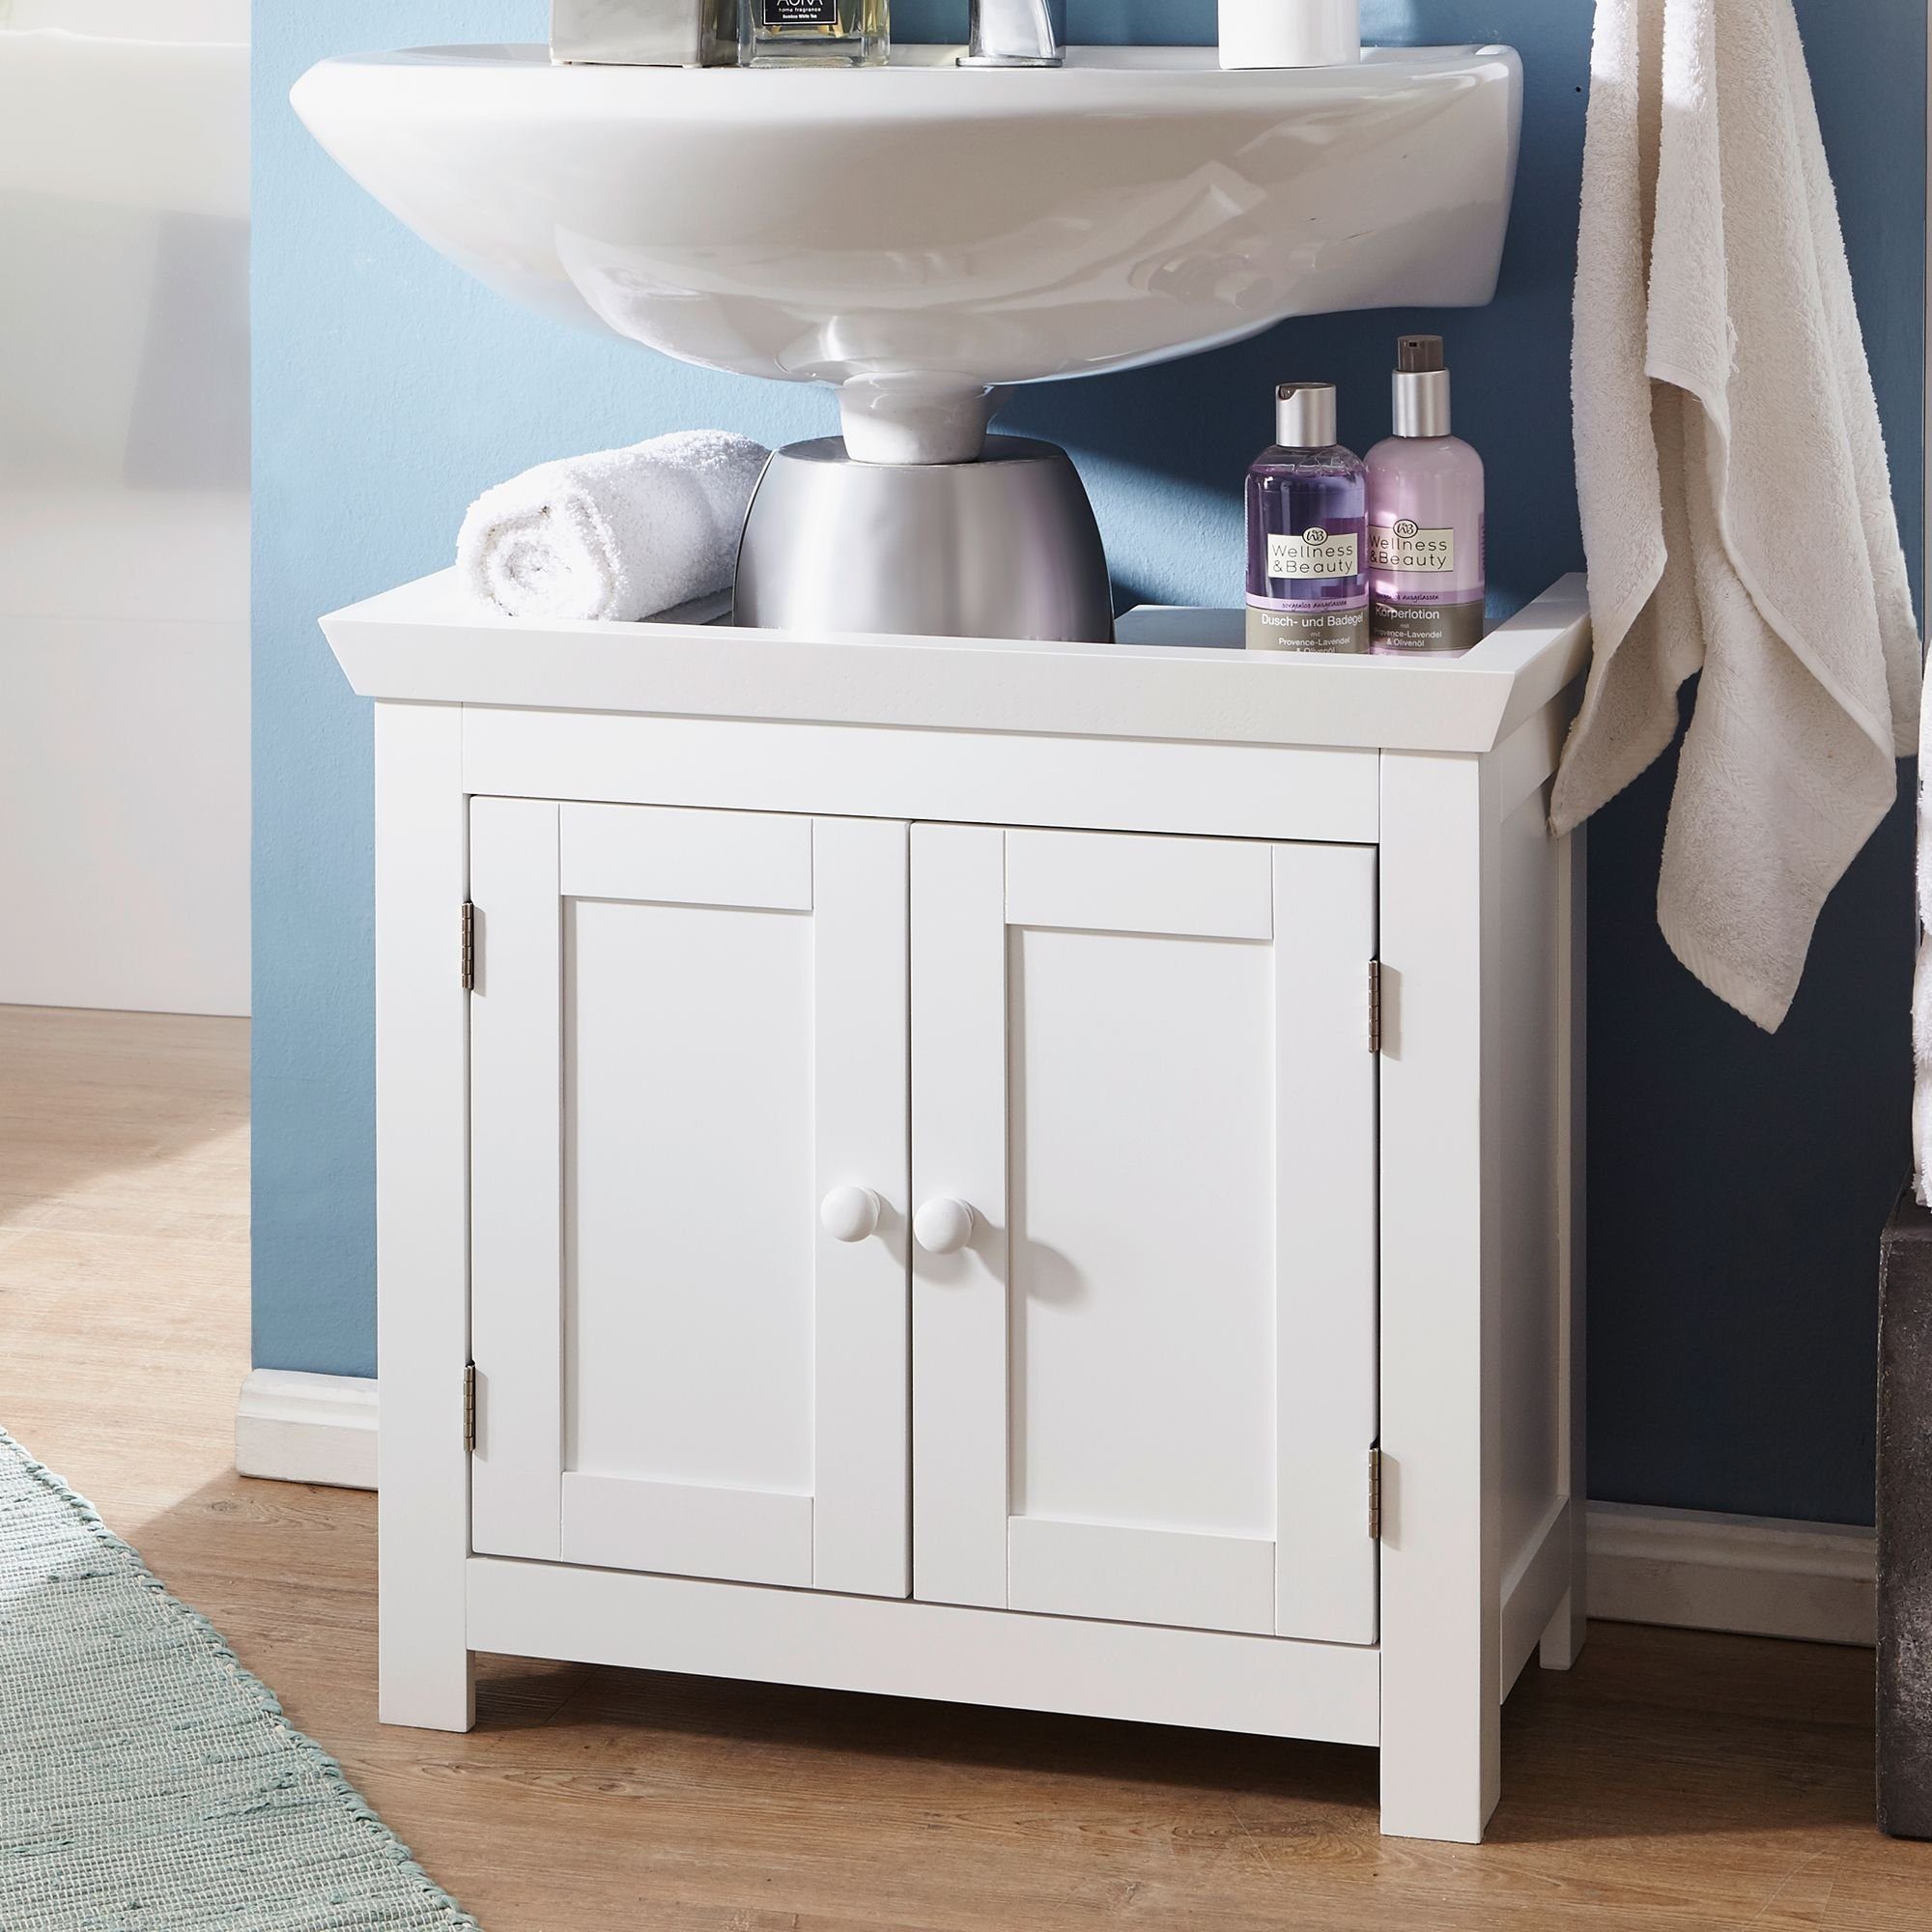 FINEBUY Waschbeckenunterschrank FB37103 (Badunterschrank mit 57x55,5x30 Badschrank 2 cm Türen) Waschtischunterschrank Modern, Stehend Weiß